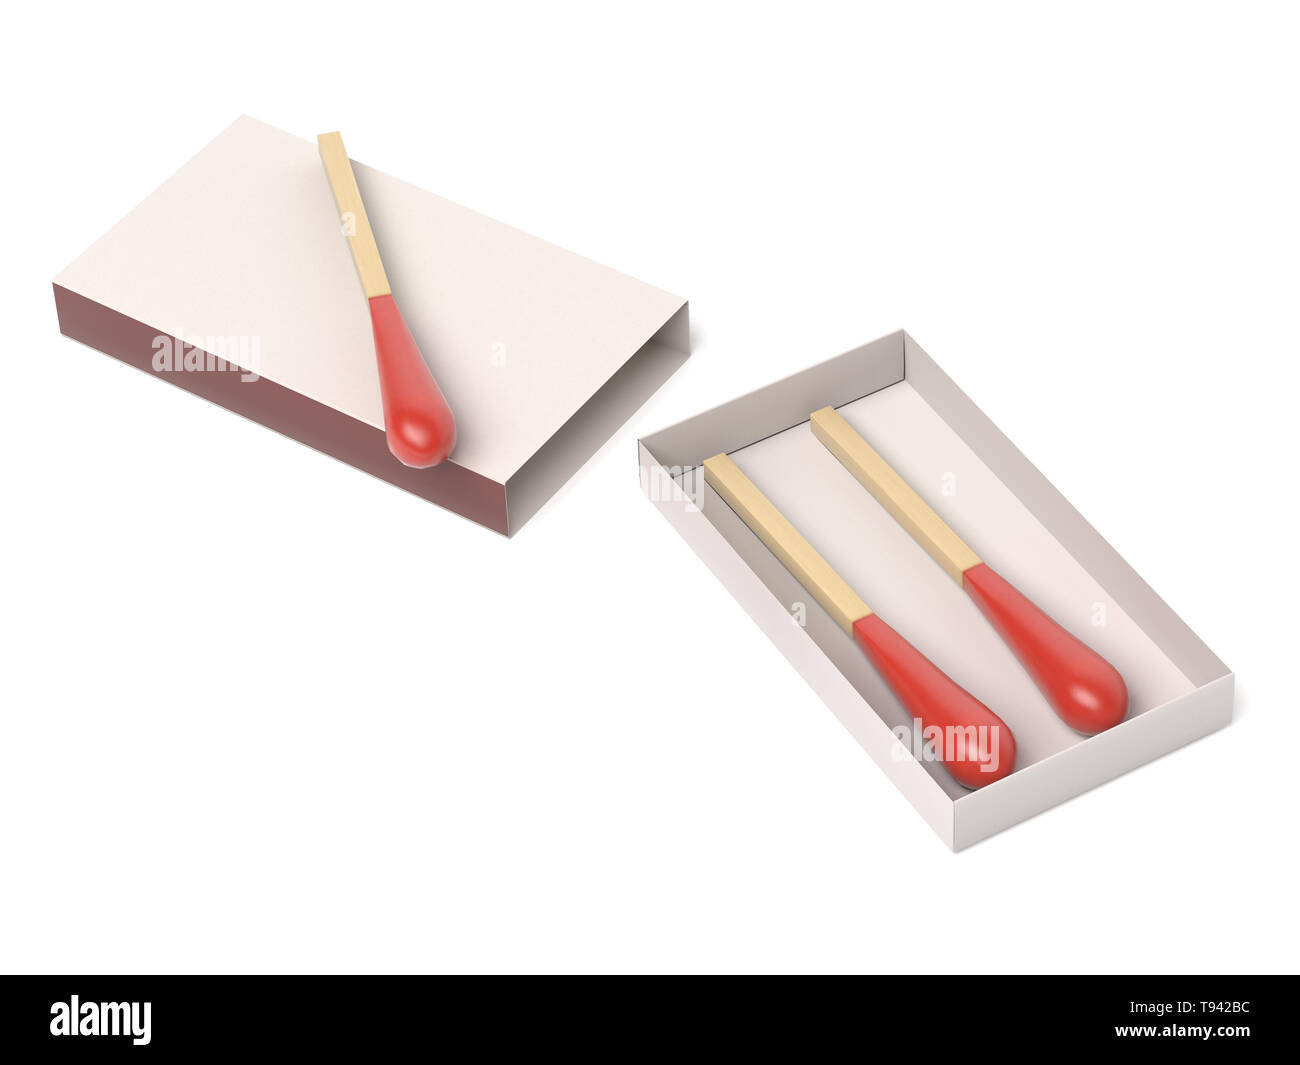 Dei fiammiferi in scatola aperta. 3D rendering immagine isolata su sfondo bianco Foto Stock